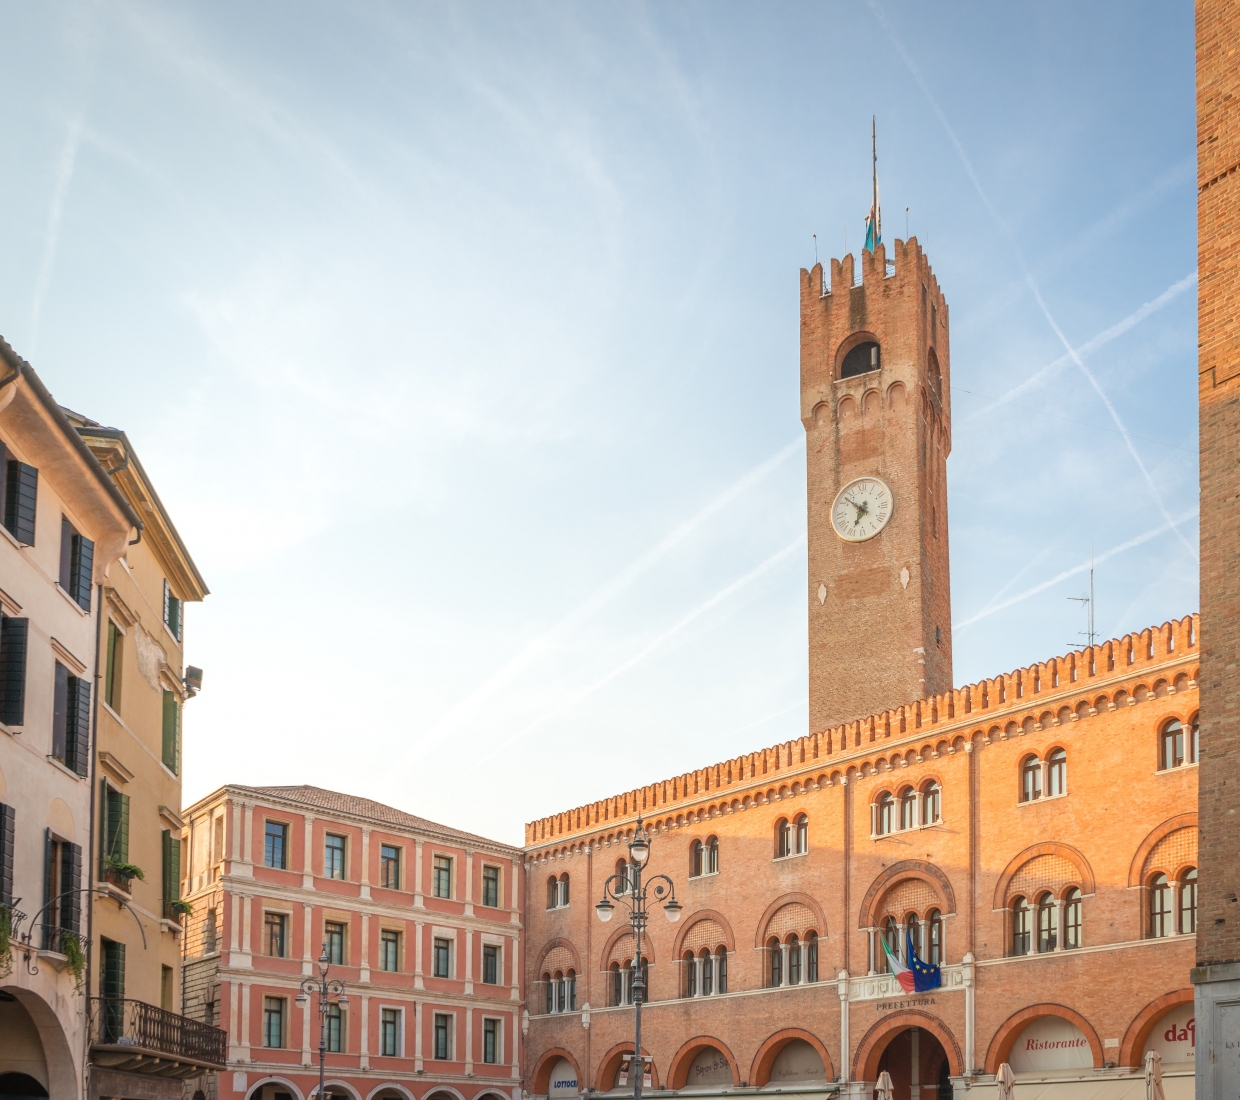 Hotéis boutique Treviso, hotéis de luxo e casas de férias Treviso